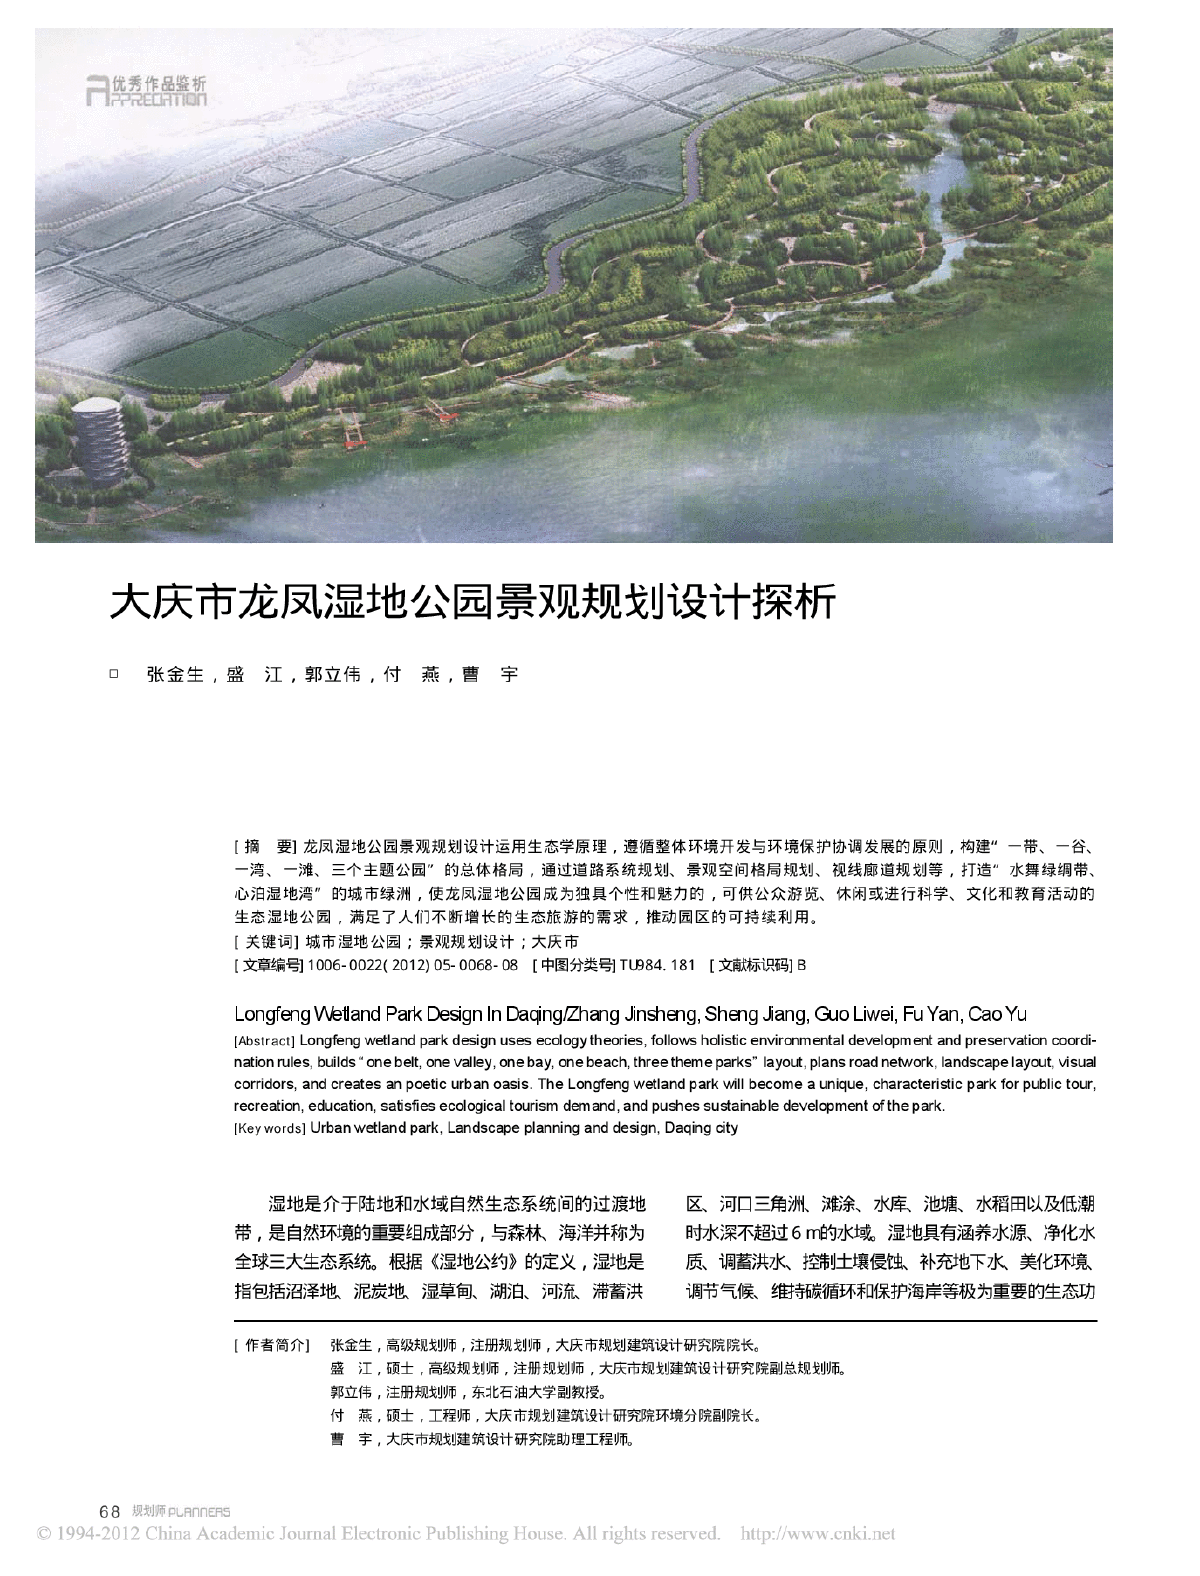 大庆市龙凤湿地公园景观规划设计探析